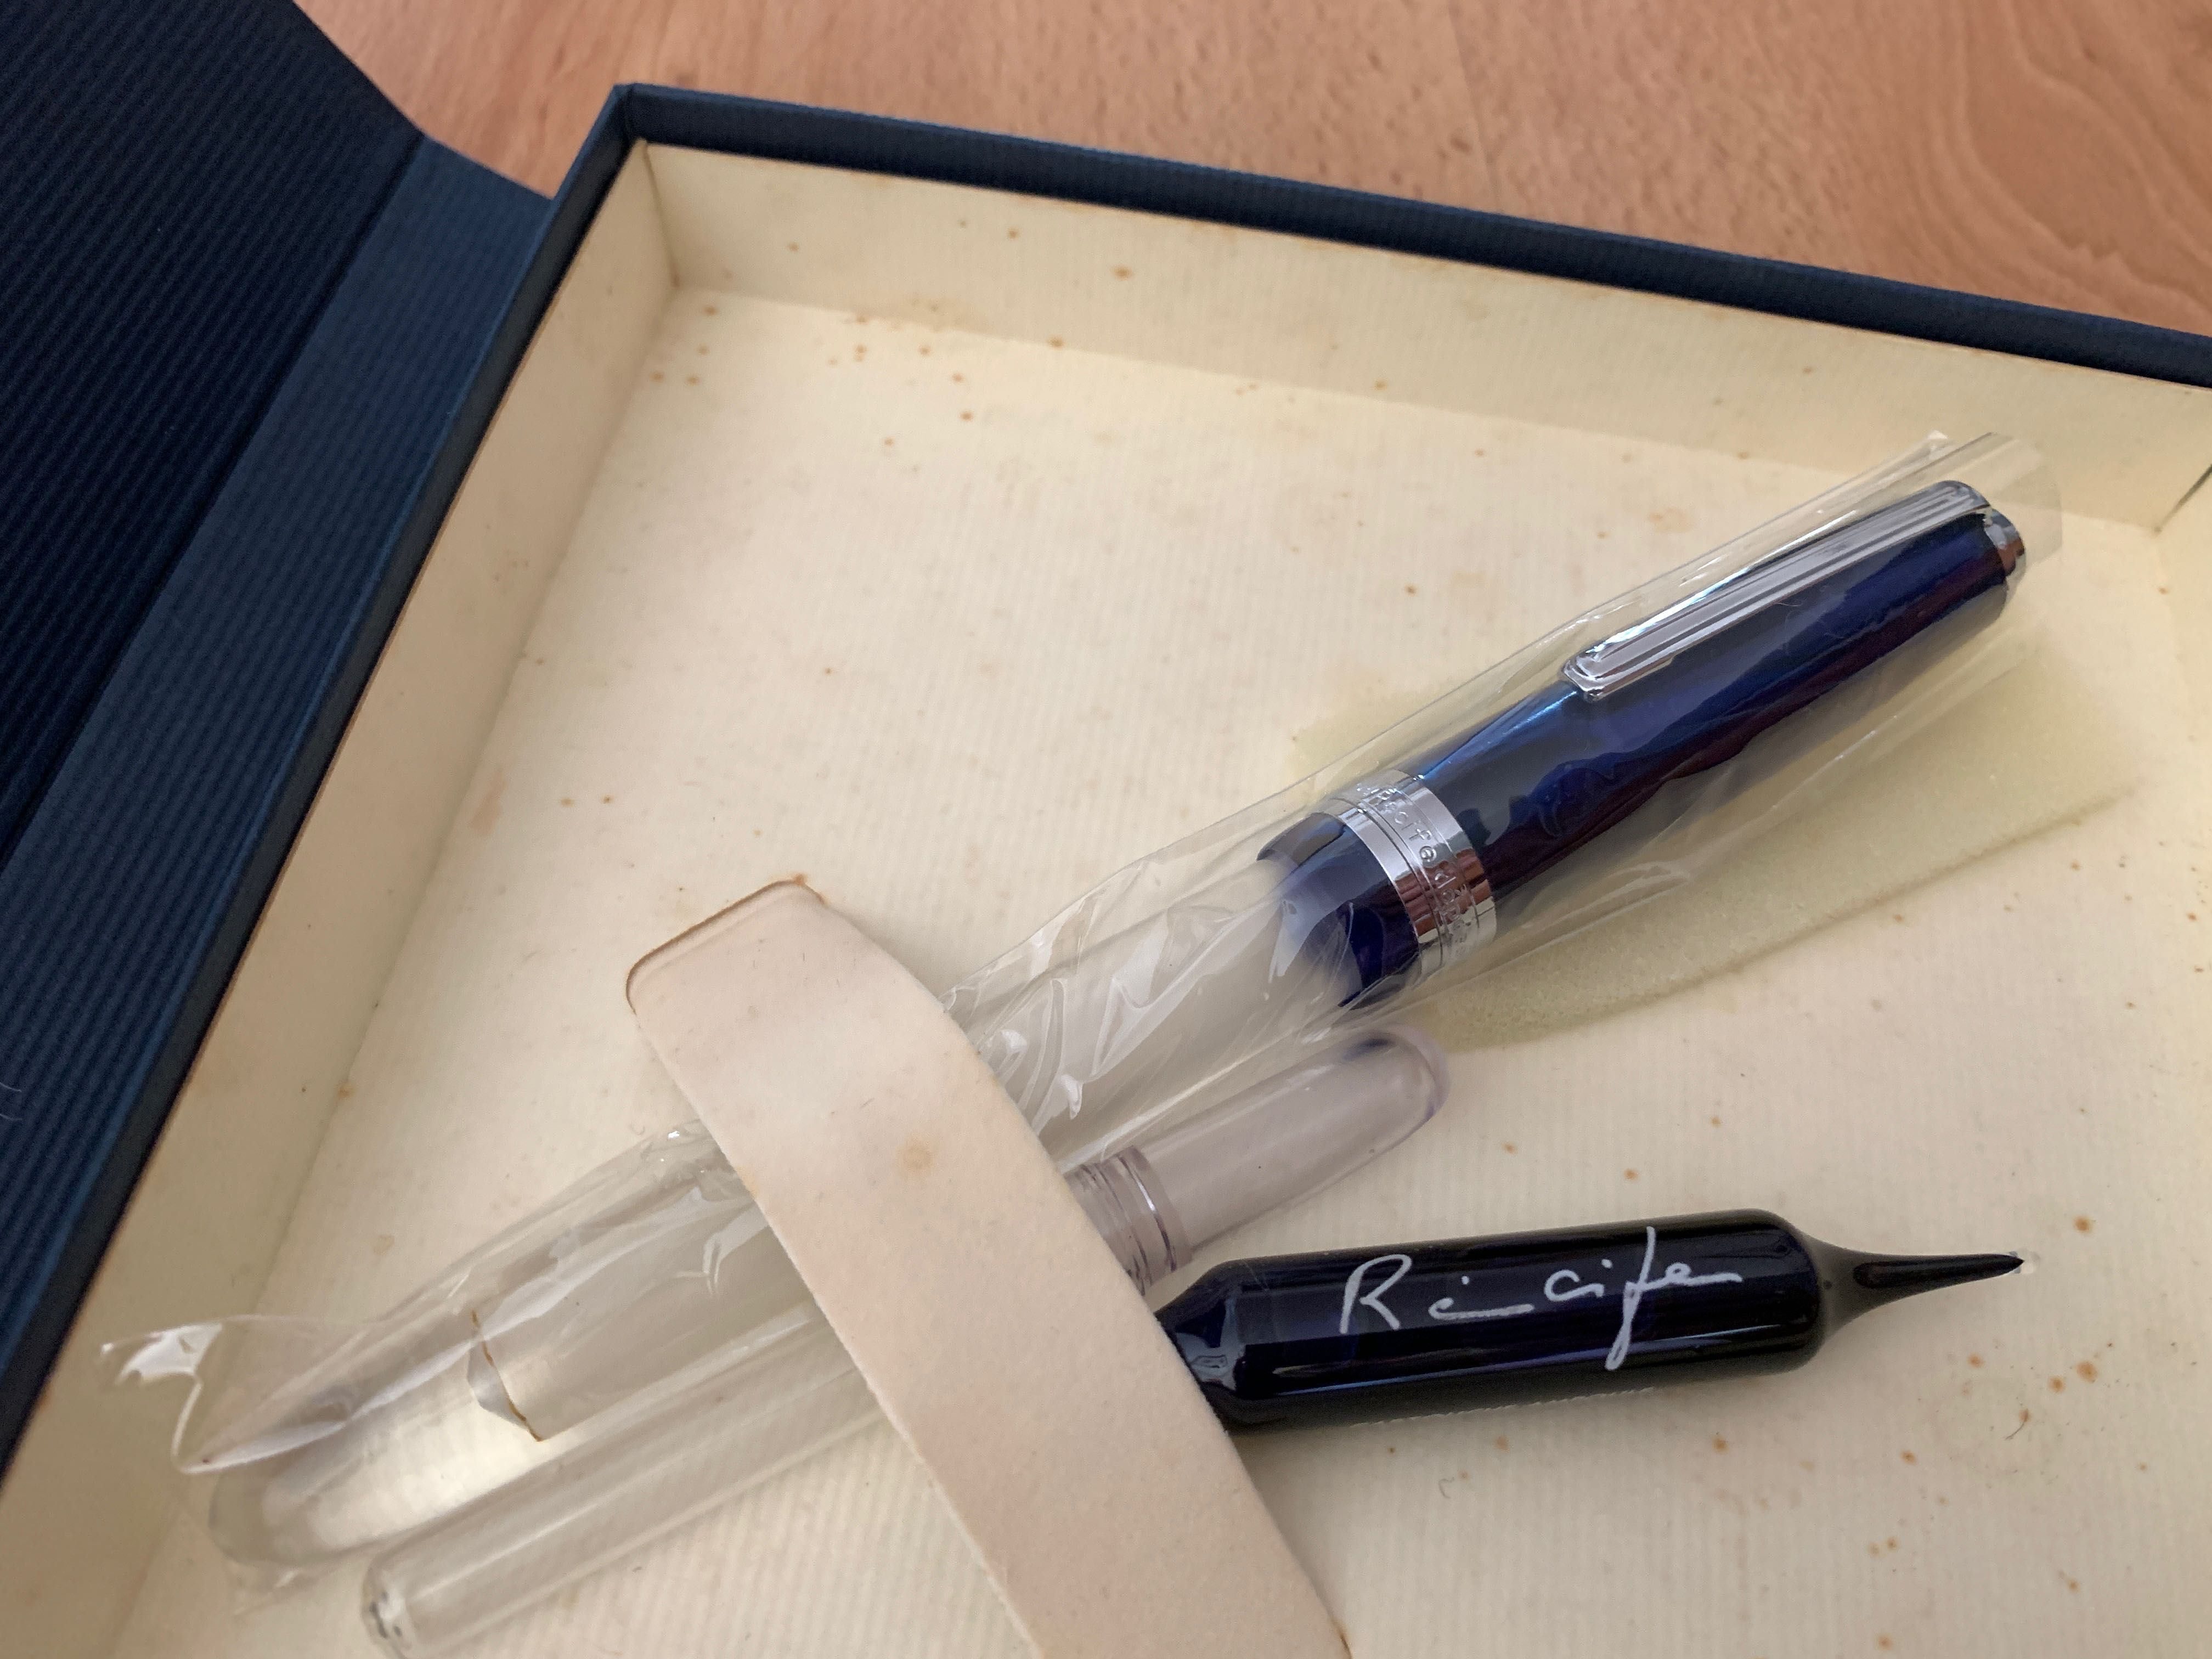 Caneta tinta permanente Recife Amber Crystal azul com inscrição VW